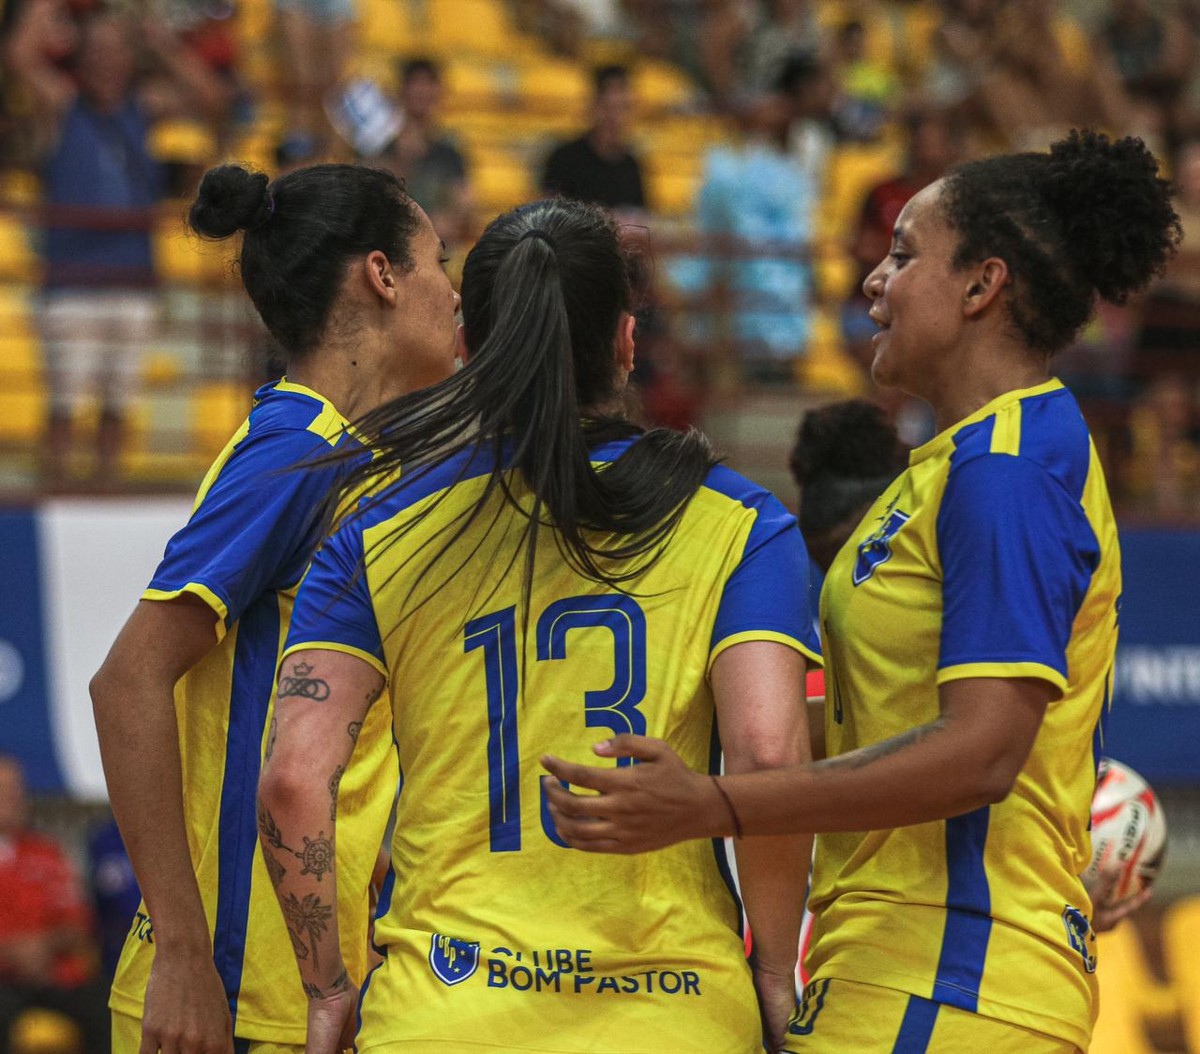 Juiz de Fora vence Ressaquinha e conquista Copa Integração de Futsal na categoria feminino – Globo.com